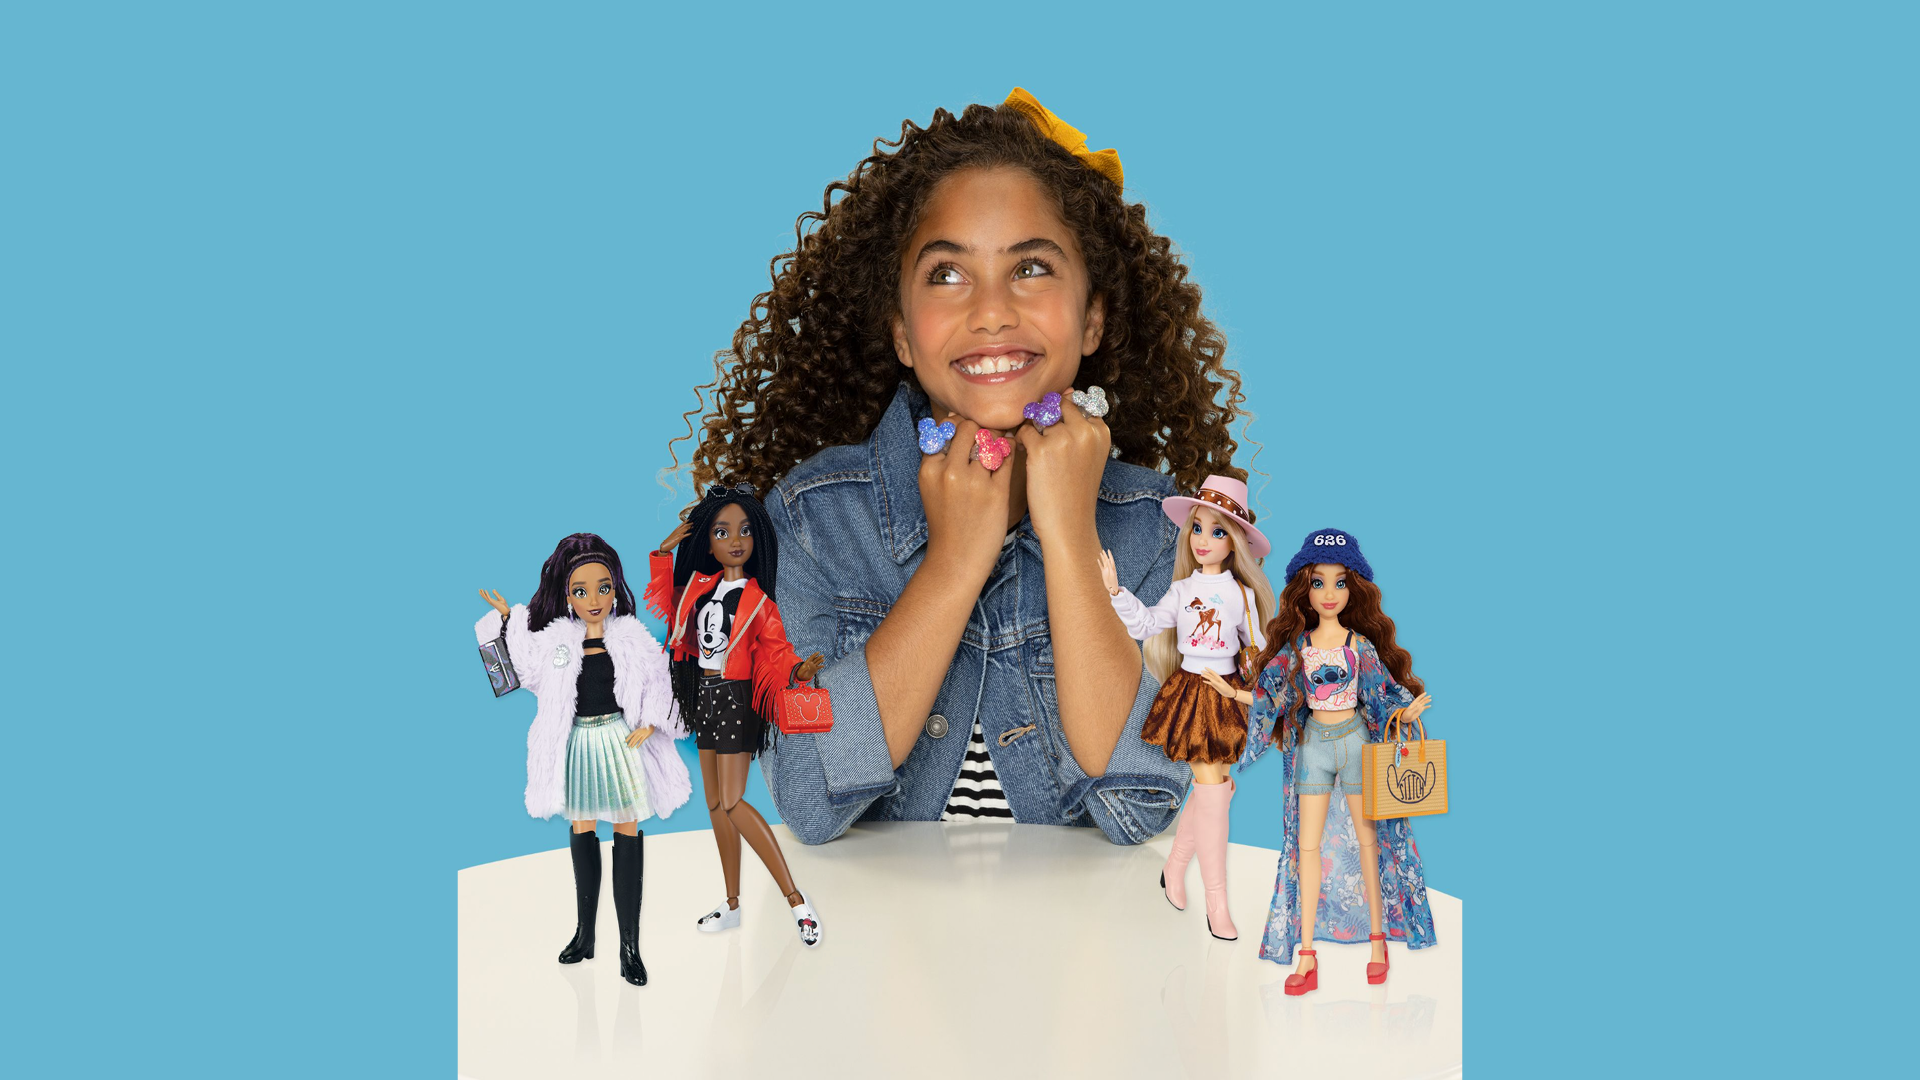 Disney ILY outfits on Barbie dolls : r/Barbie